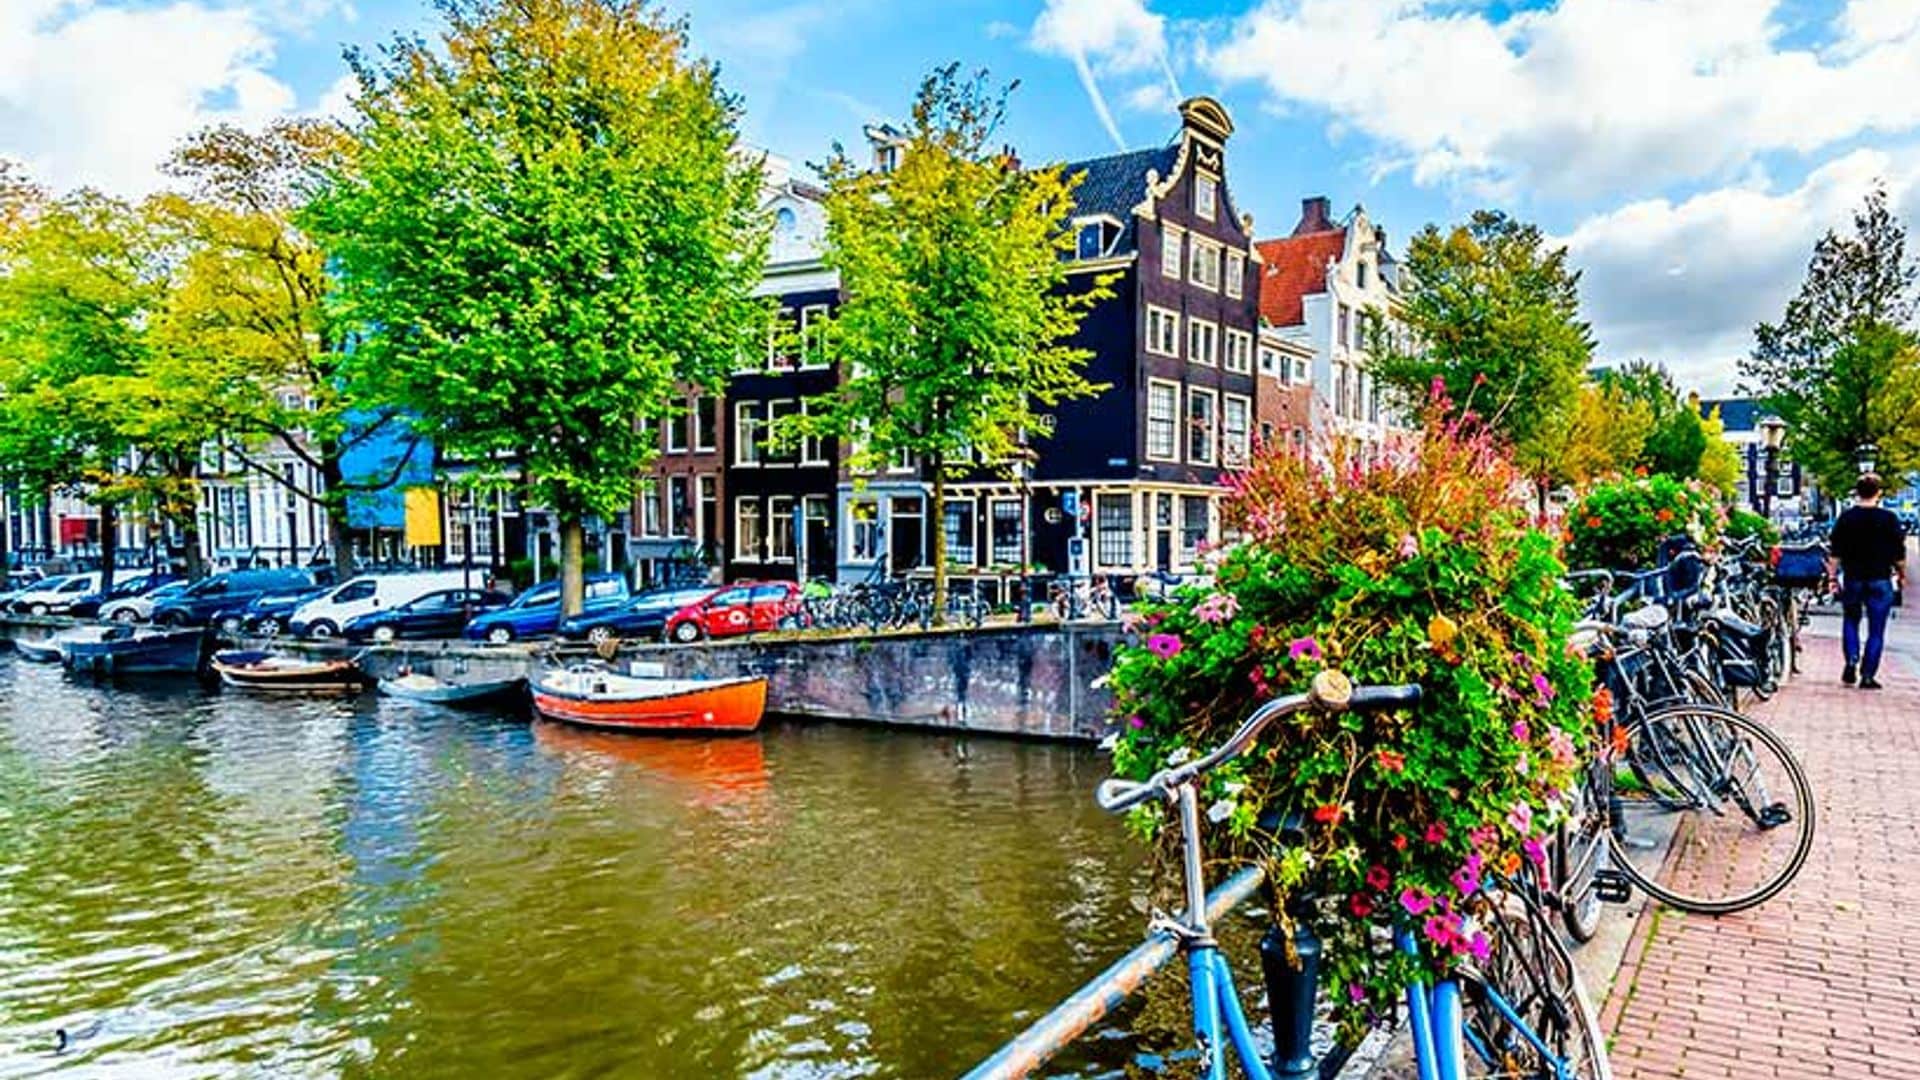 Las 9 Calles o la esencia de Ámsterdam concentrada en un barrio